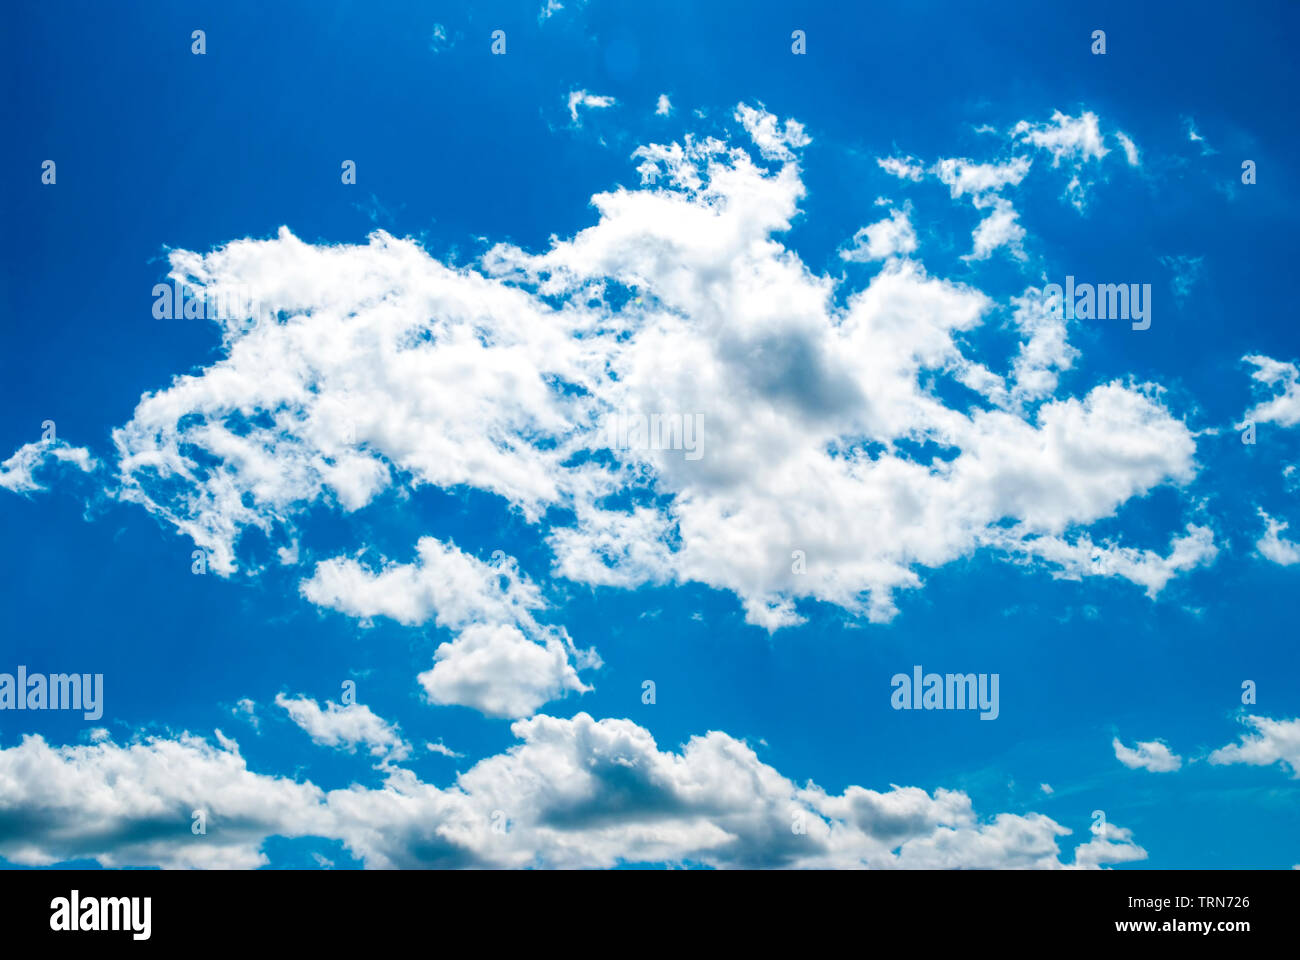 Été, ciel bleu avec des nuages blancs. Banque D'Images